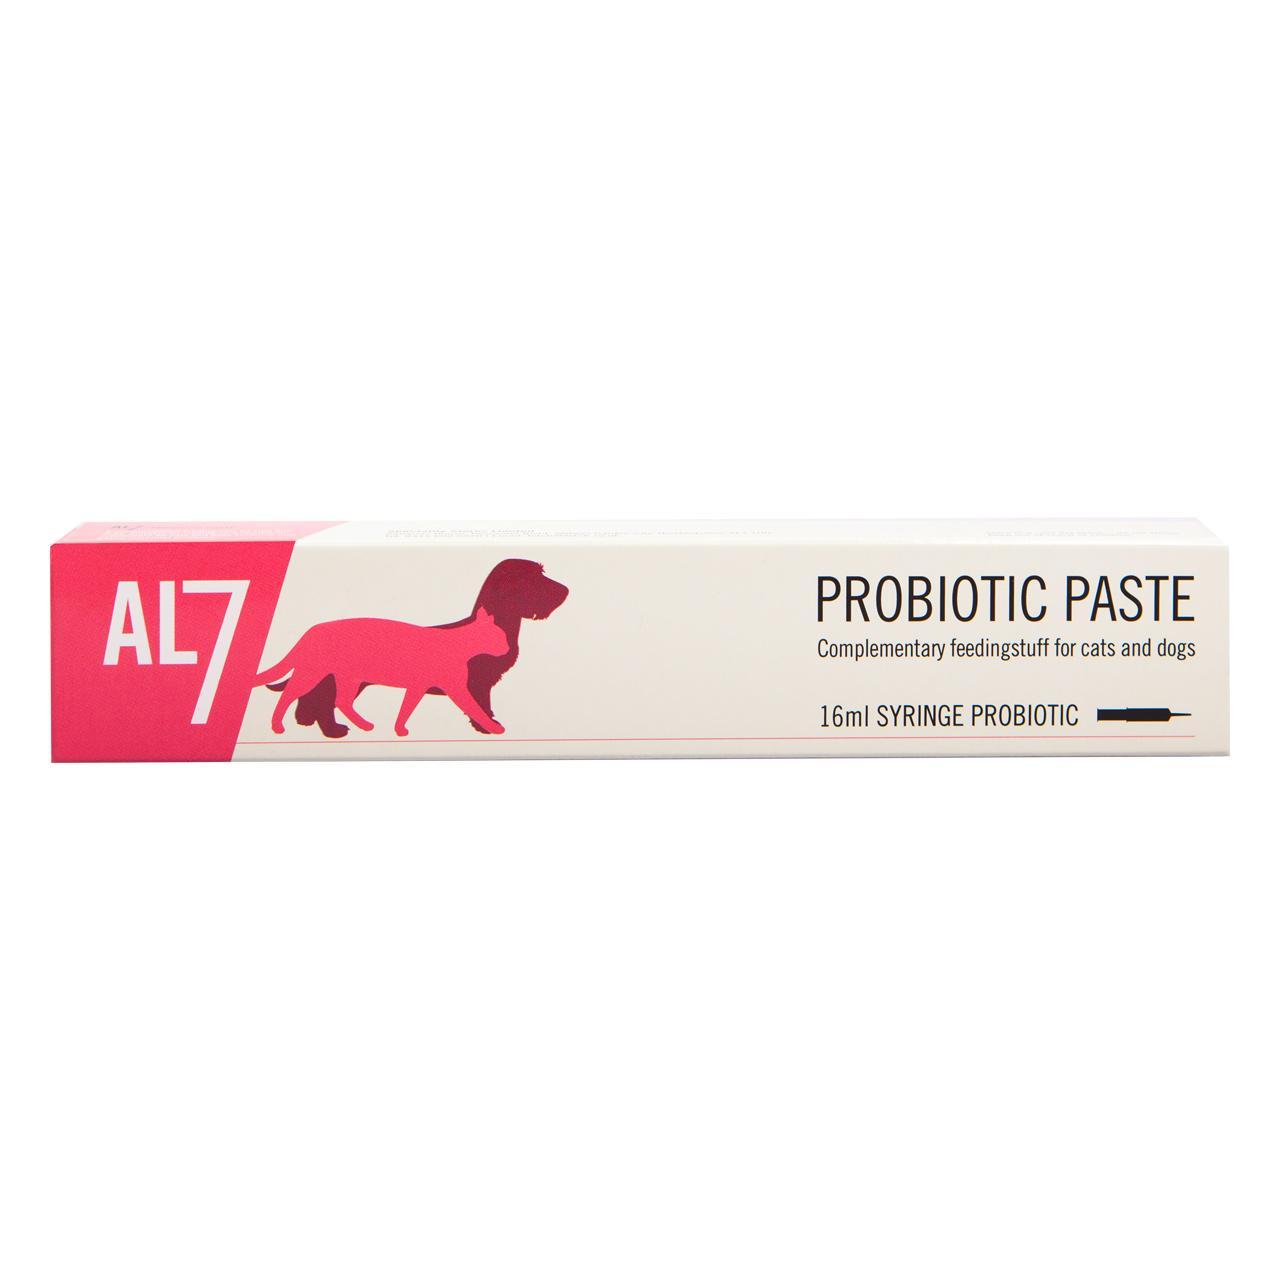 An image of AL7 Probiotic Paste